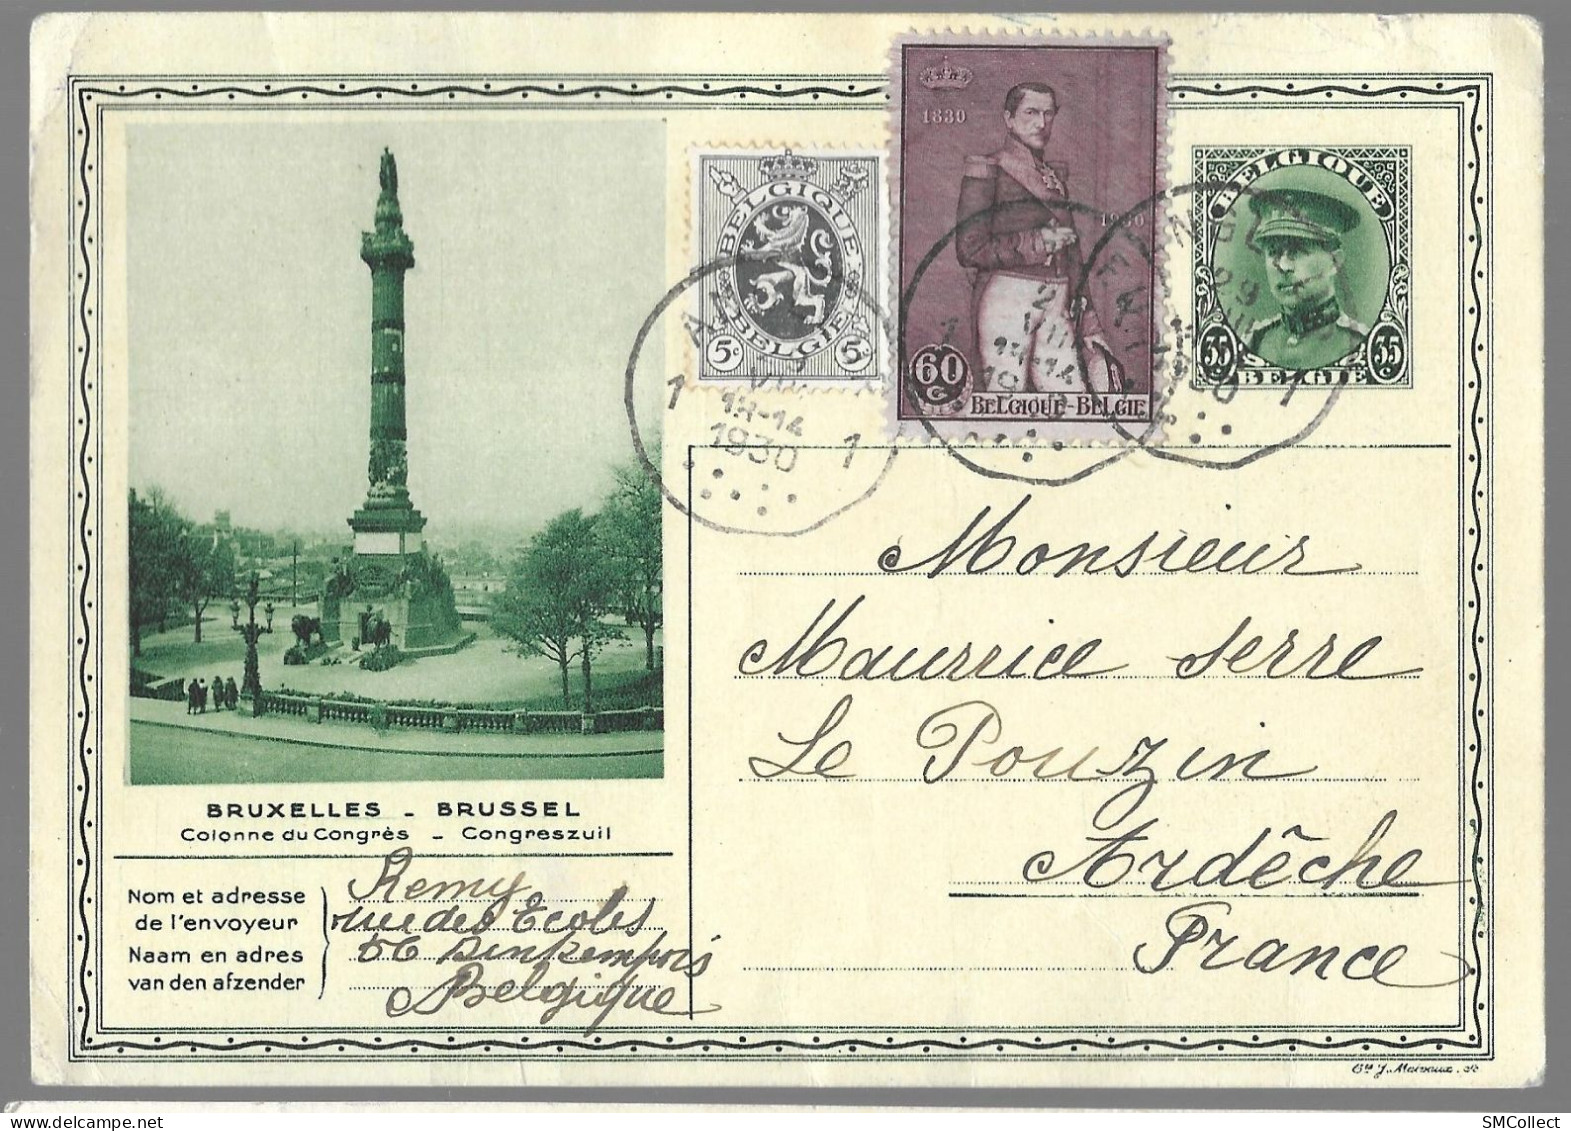 Belgique, Entier Postal "colonne Du Congrès" 35 Centimes + Complément De 65 Centimes (étranger) TAD 1930 (GF3919) - Postkarten 1909-1934